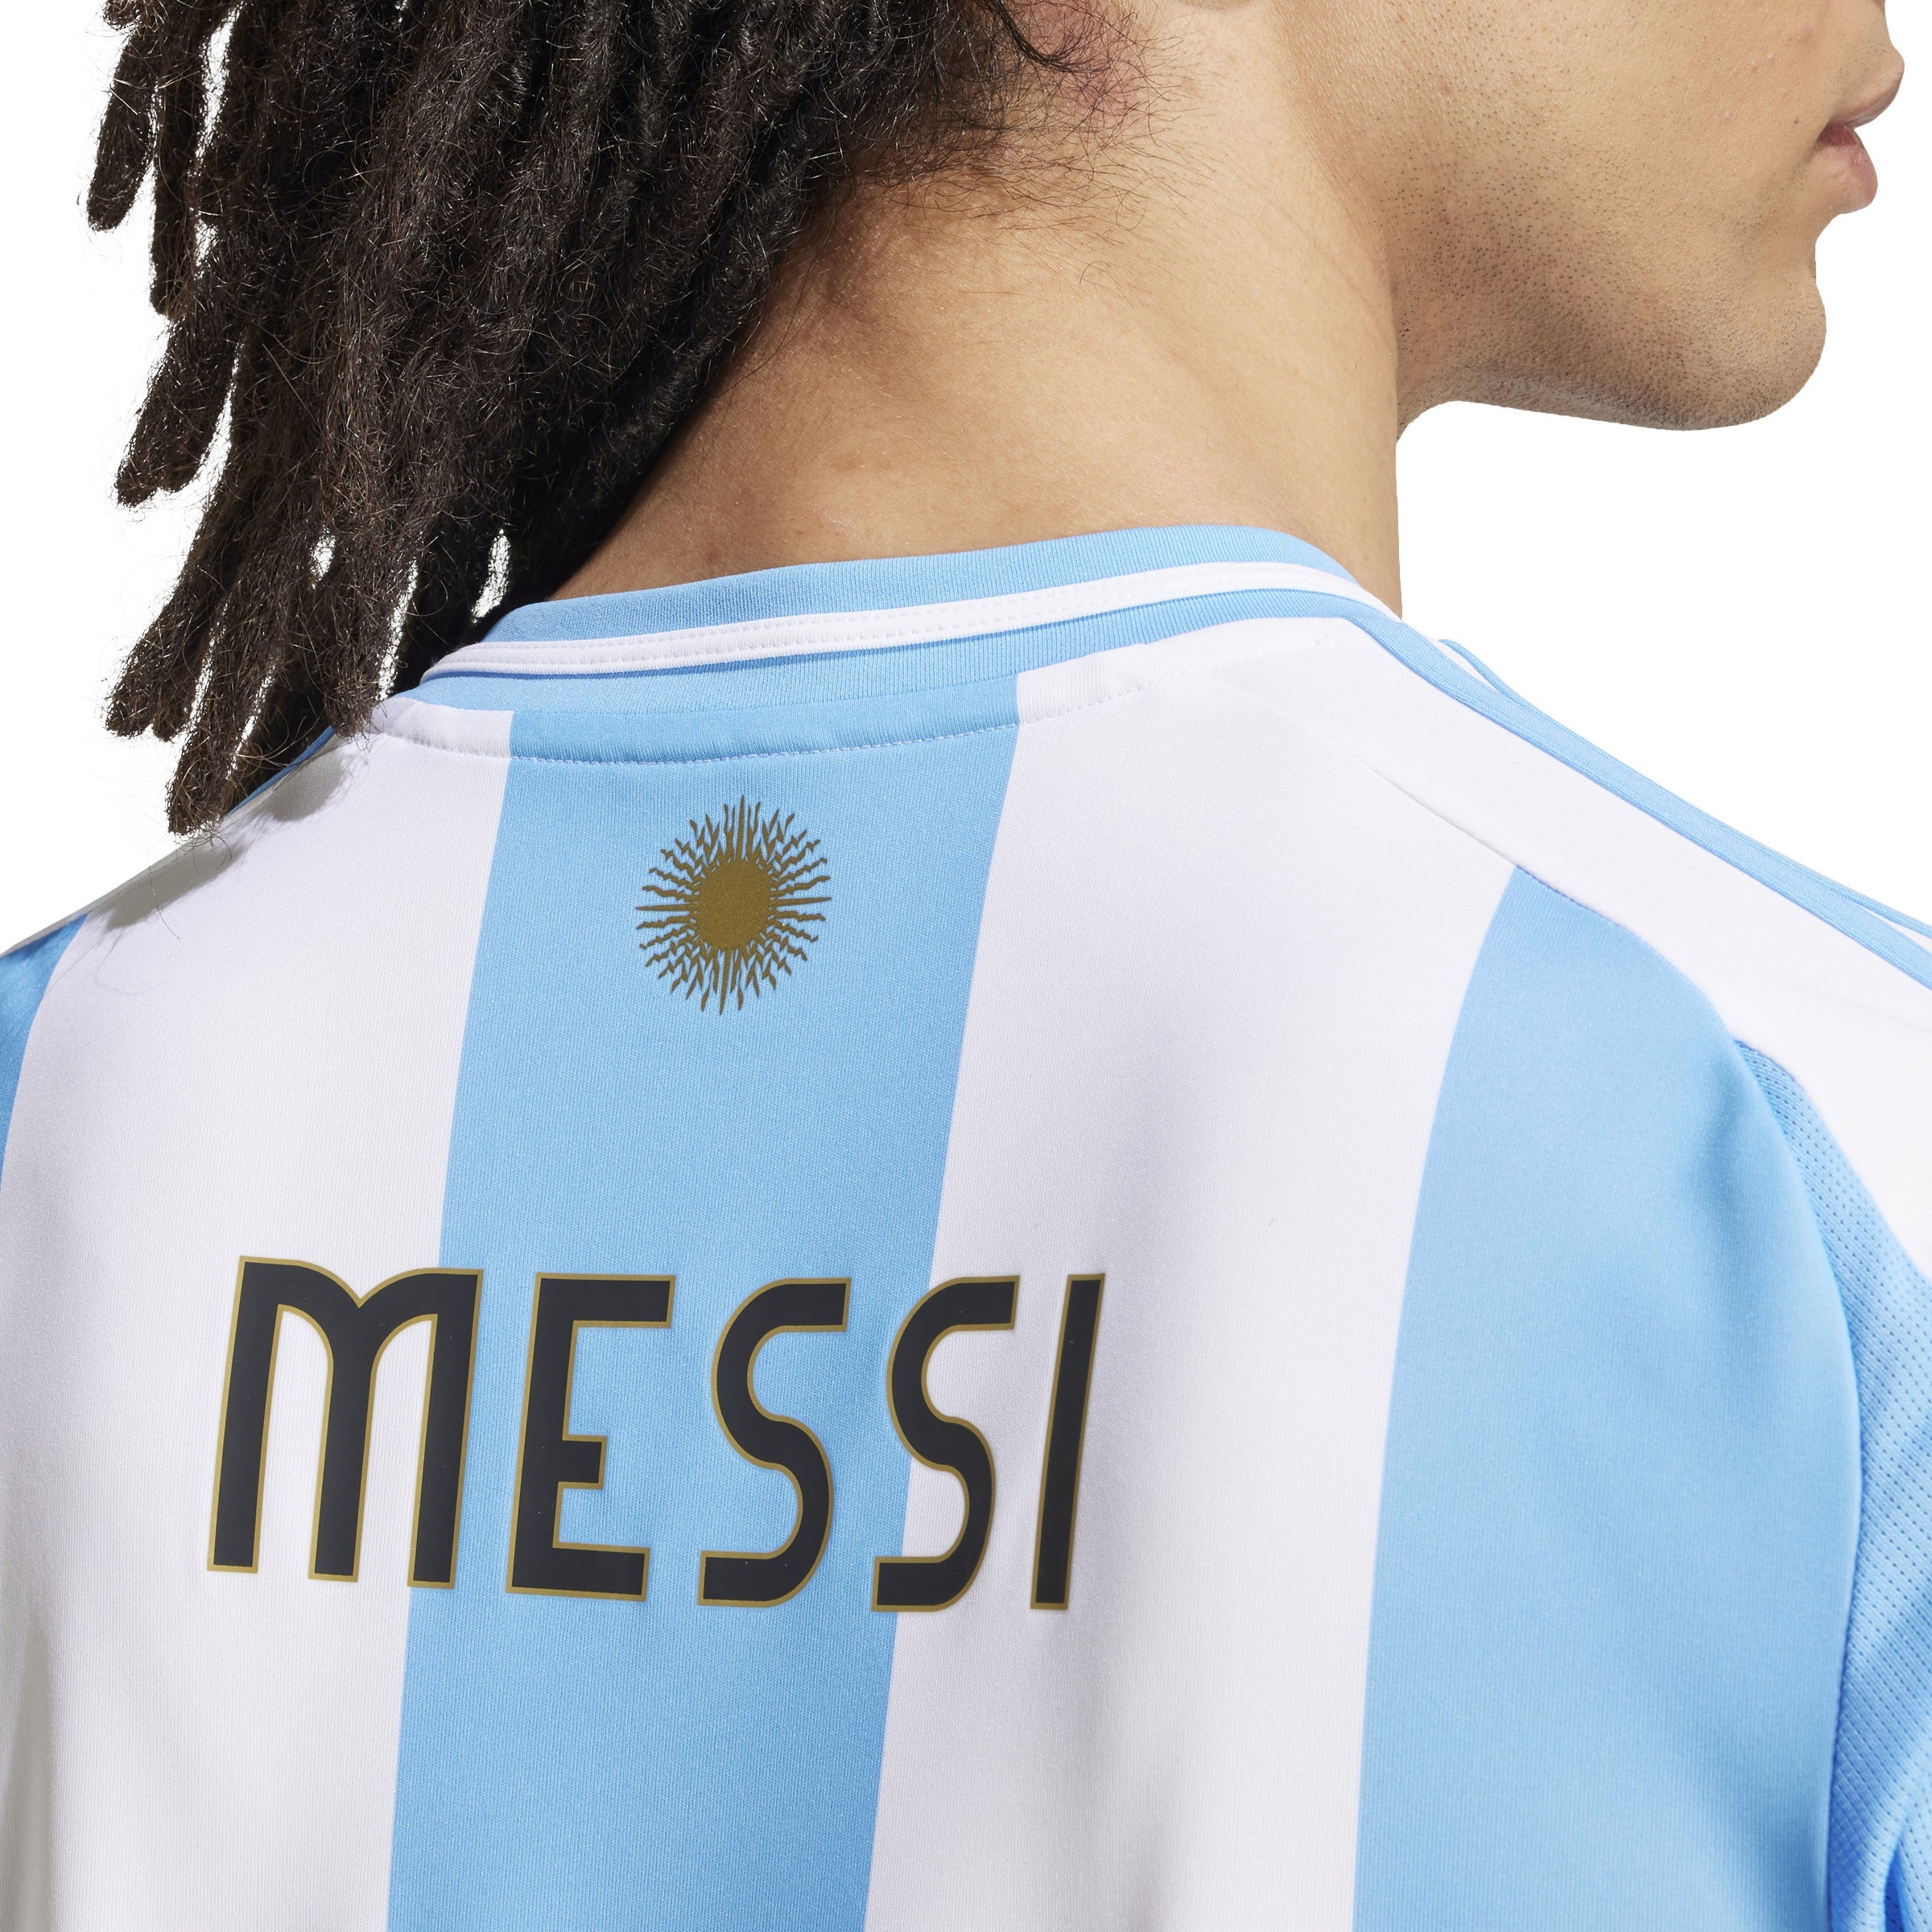 Camiseta adidas Argentina Local 24 Messi